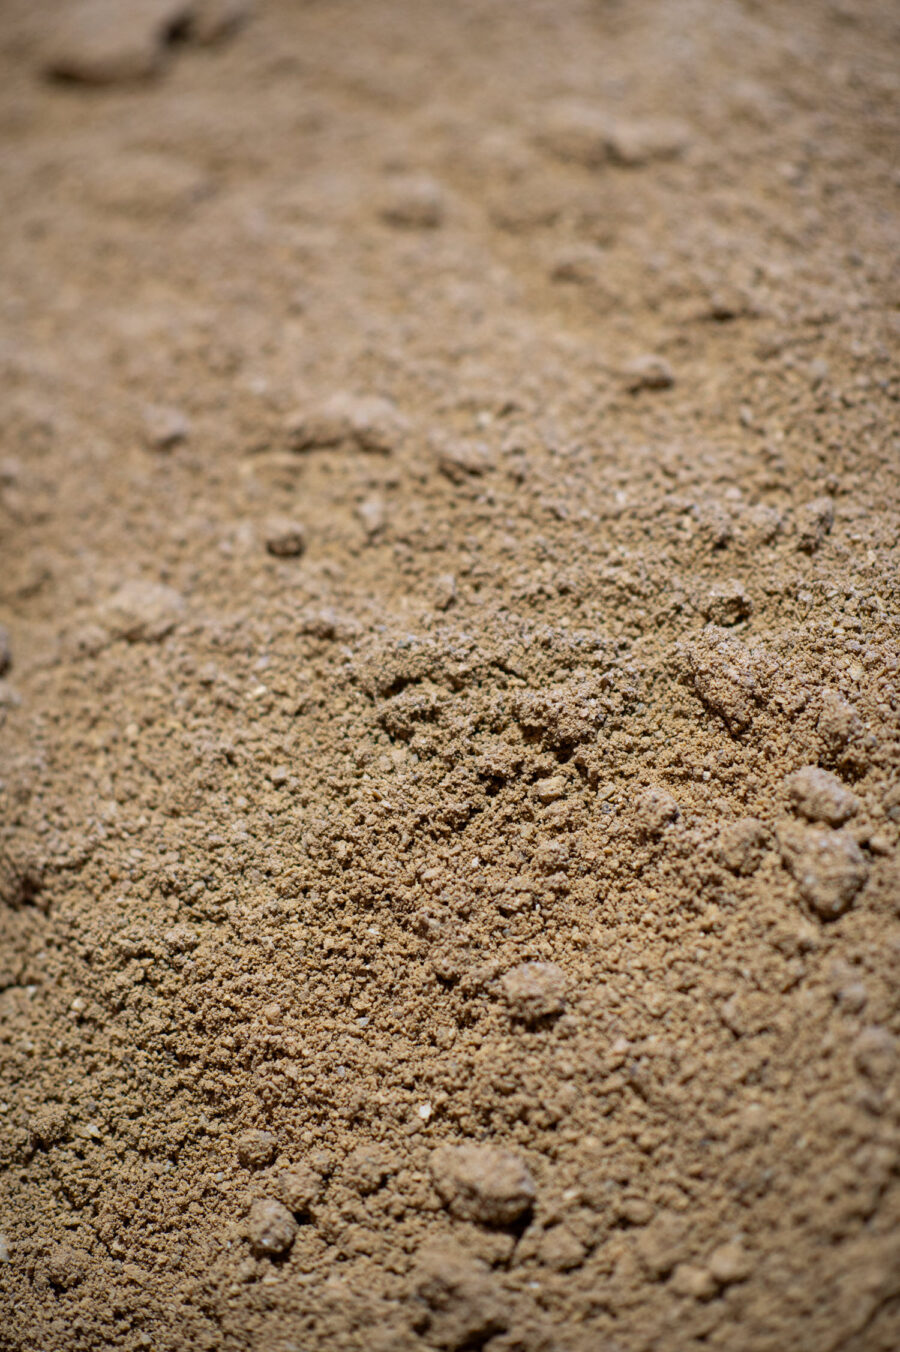 Rosedale Buttrose Crusher dust paving sand